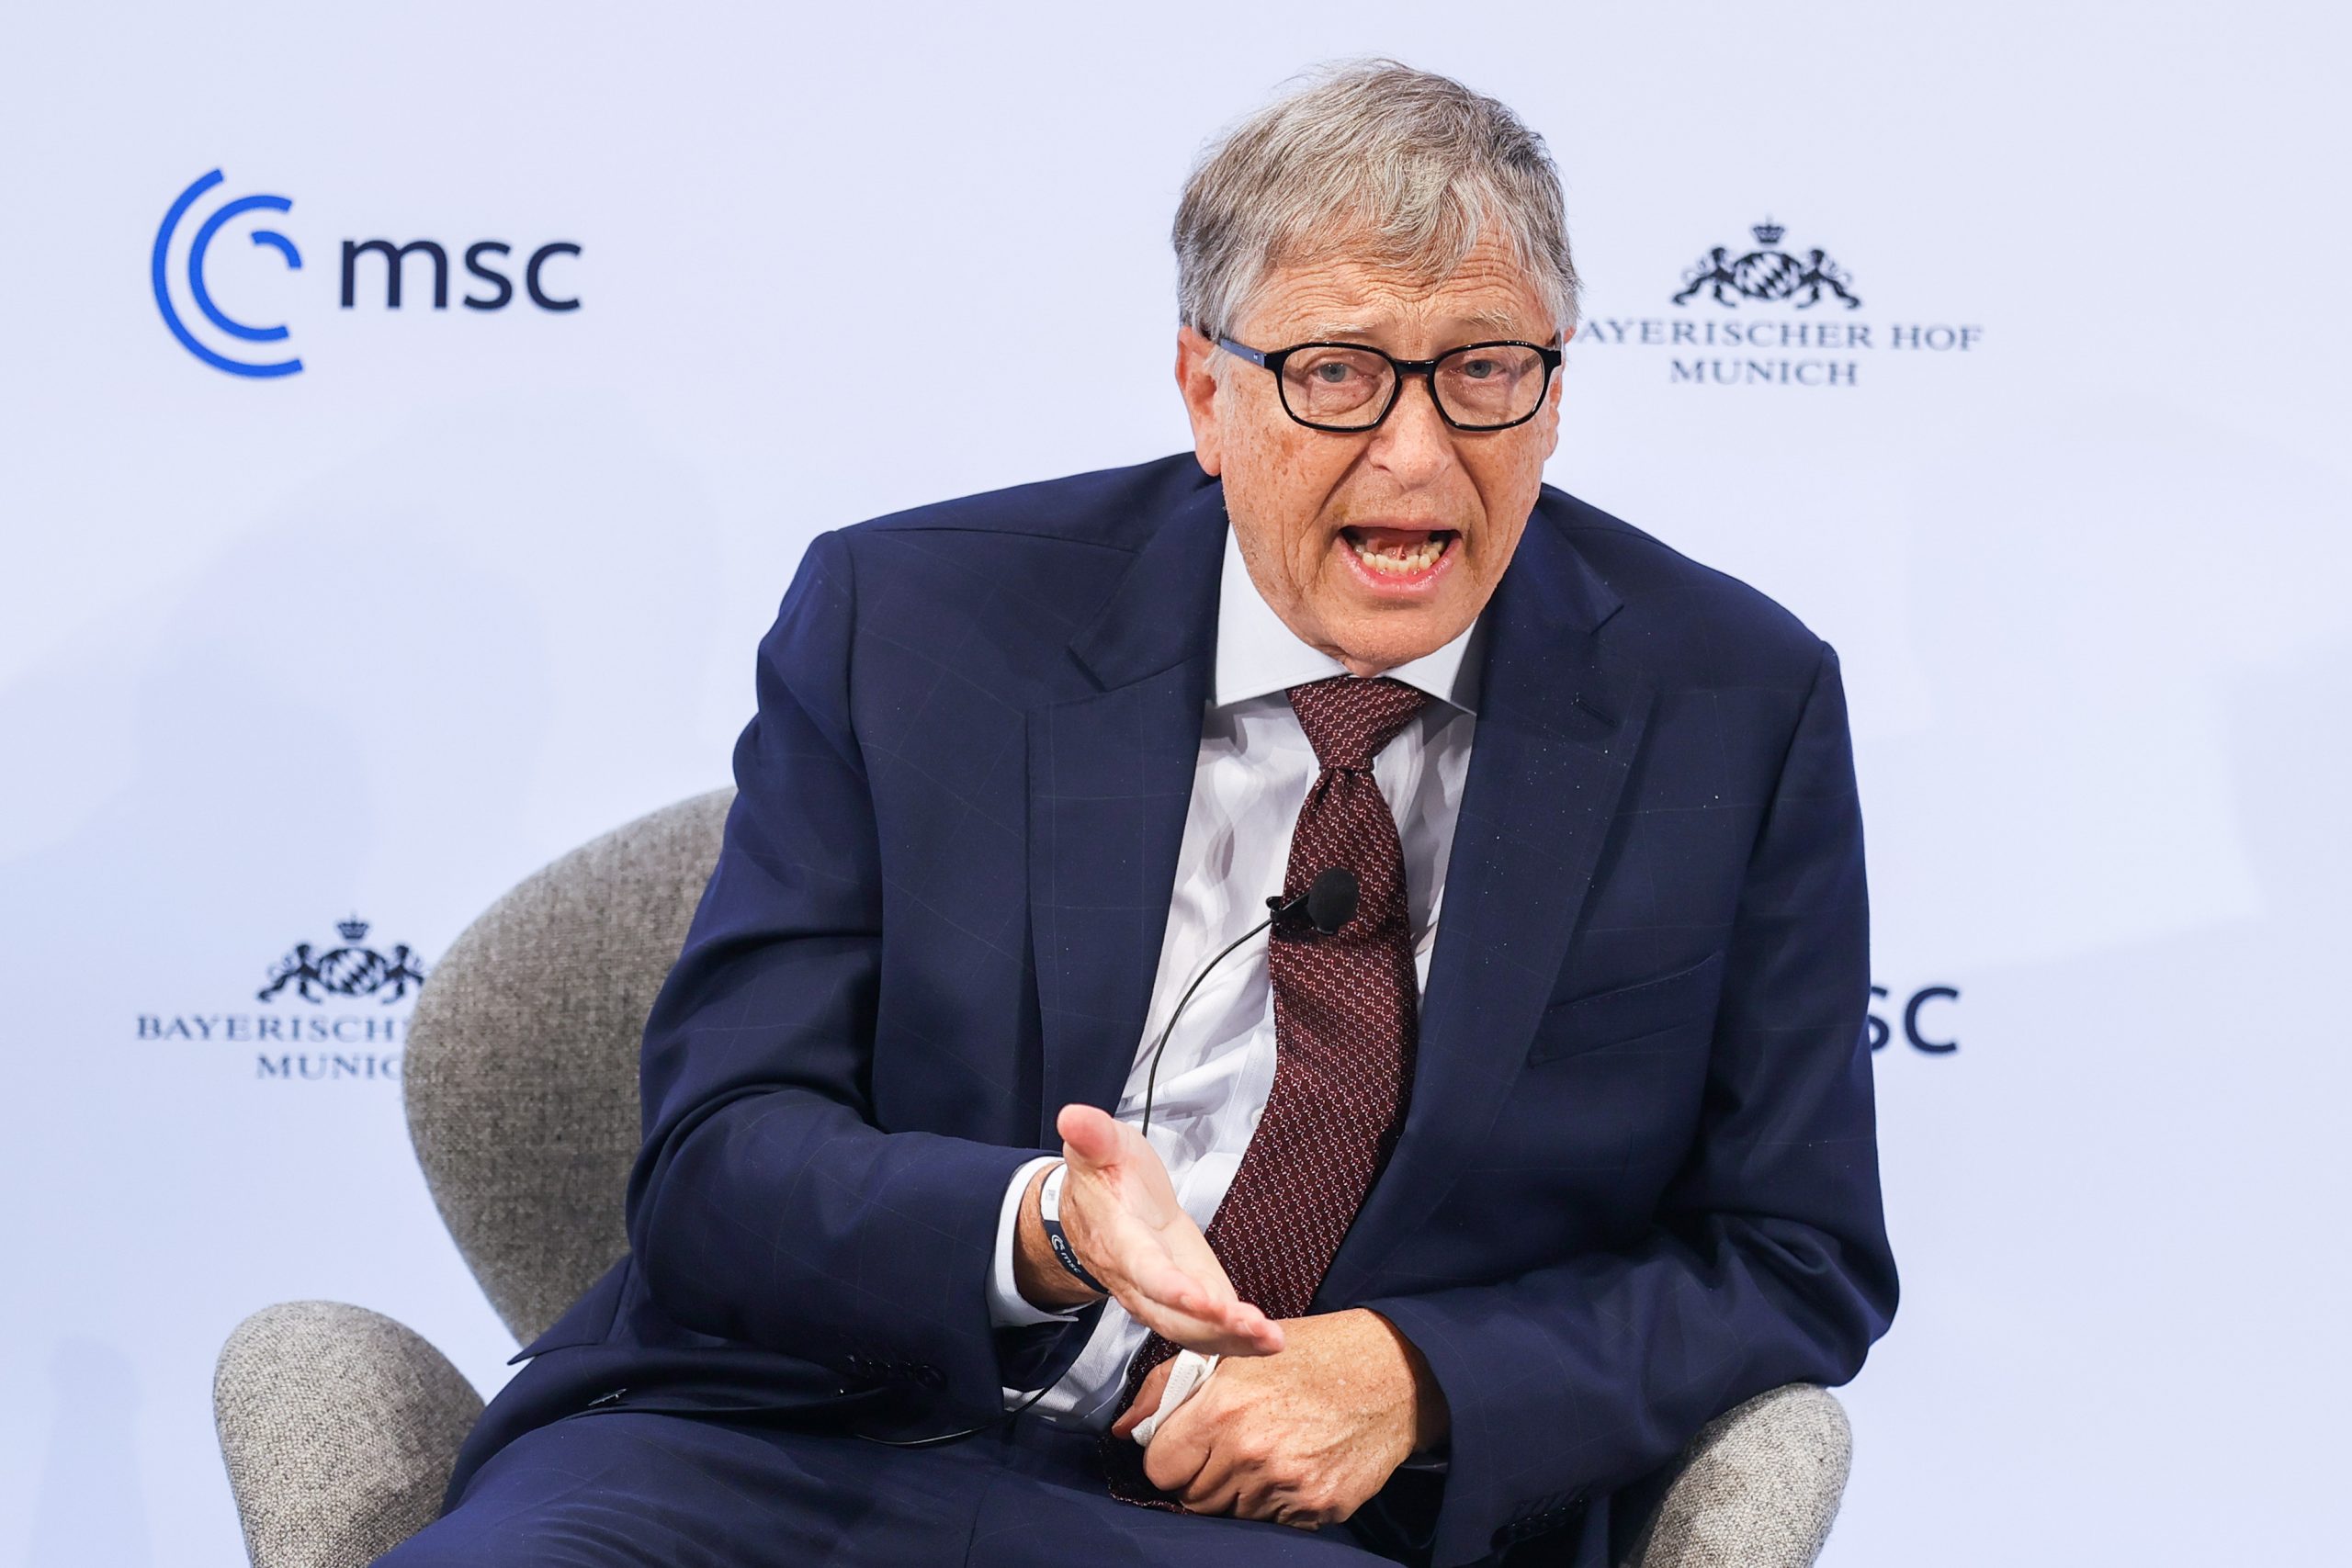 Bil Gejts Bill Gates